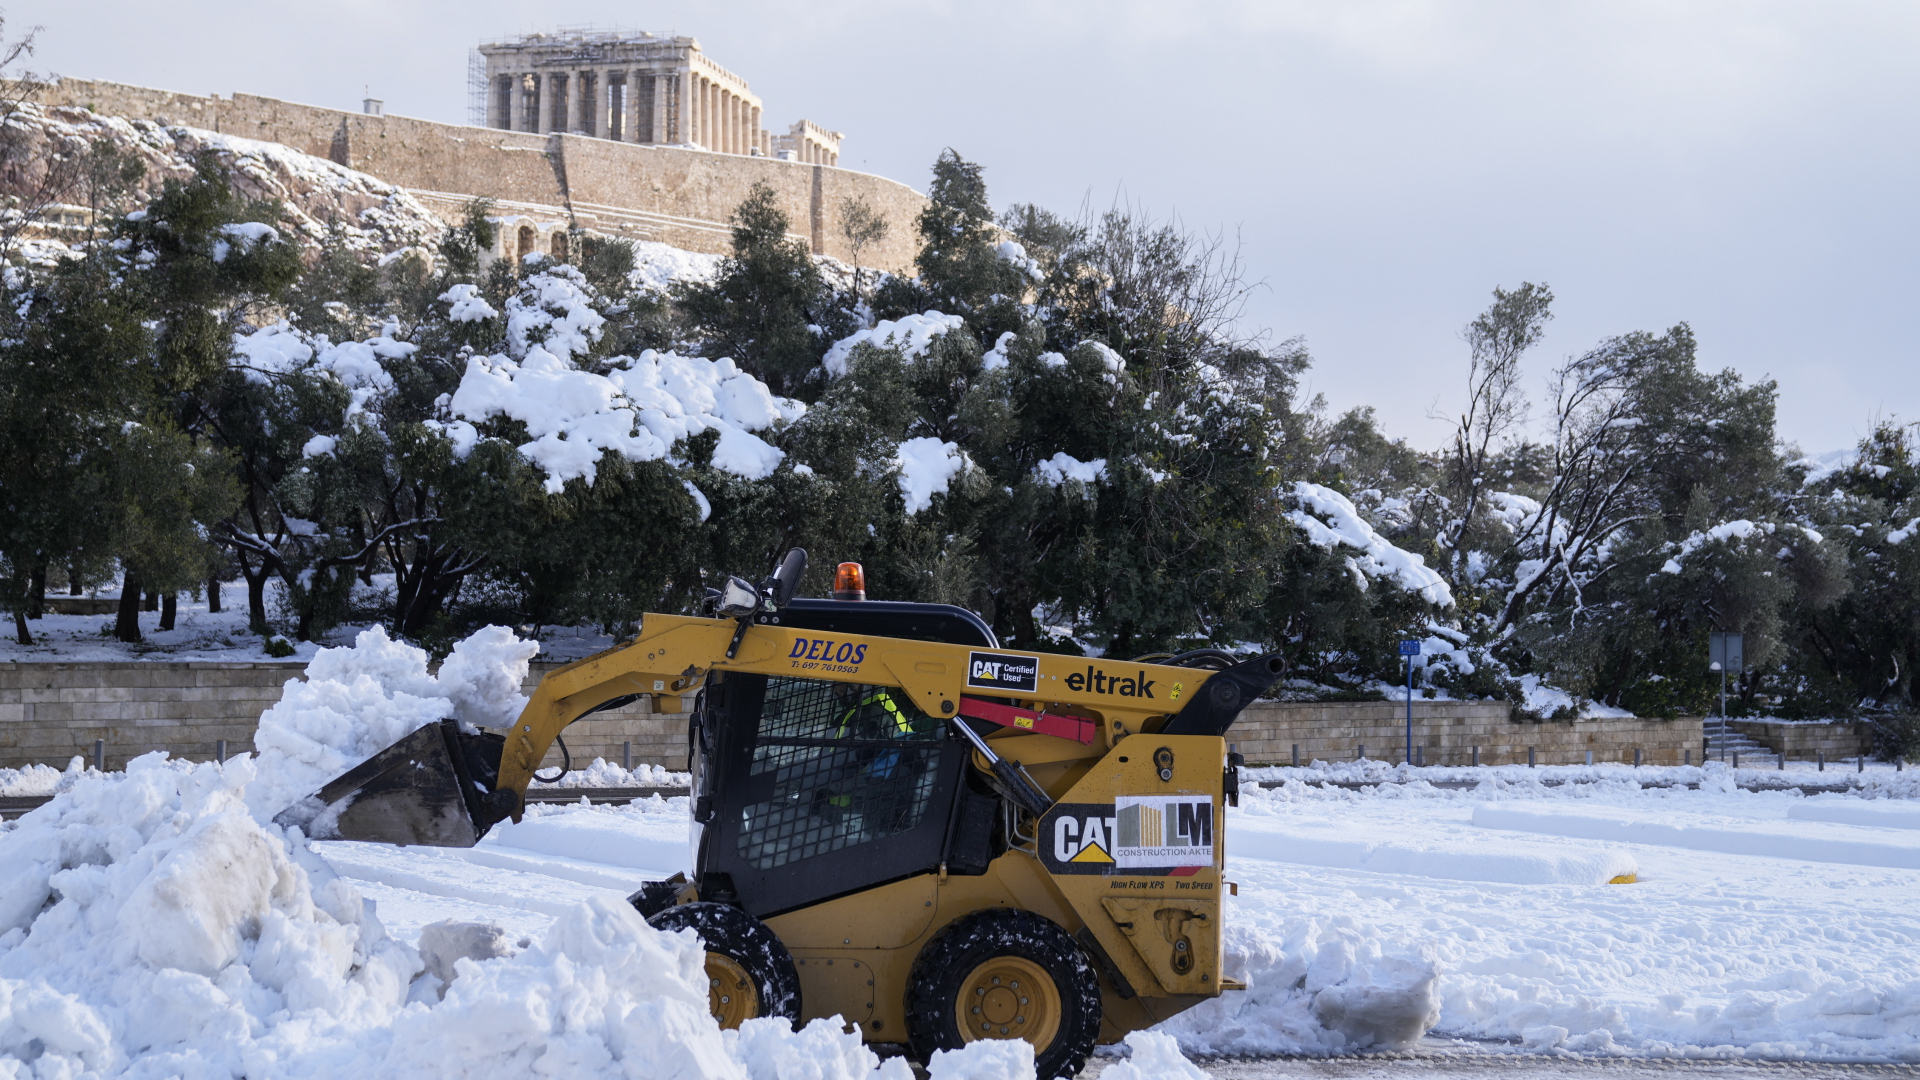 Ein Schneepflug räumt eine Straße vor dem antiken Akropolis-Hügel in Athen. | dpa